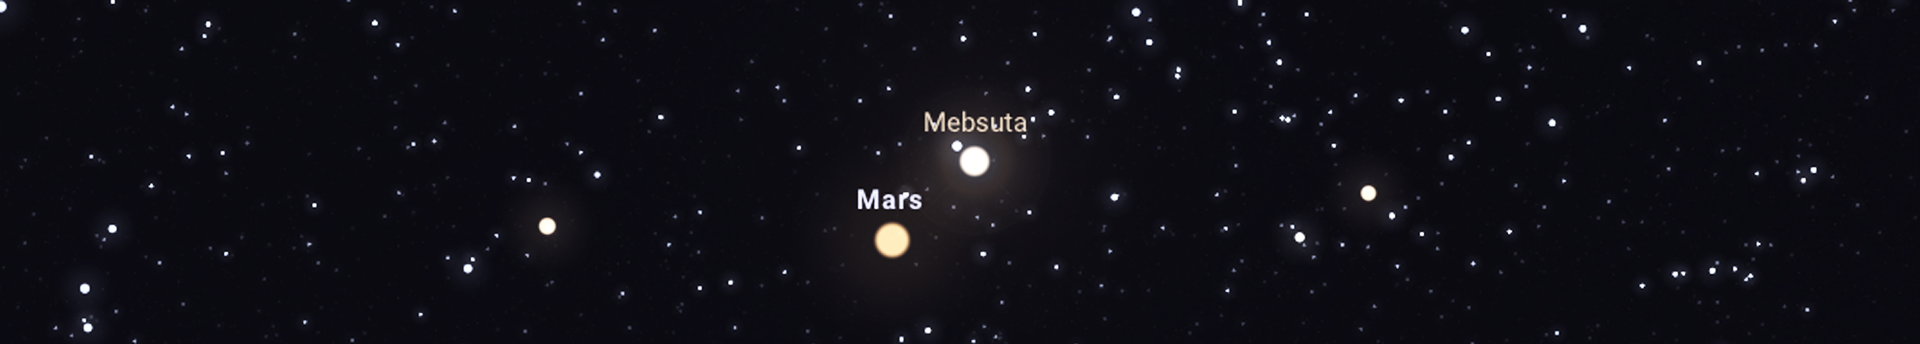 Baráti találkozó újra: együttáll a Mars és a Mebsuta!